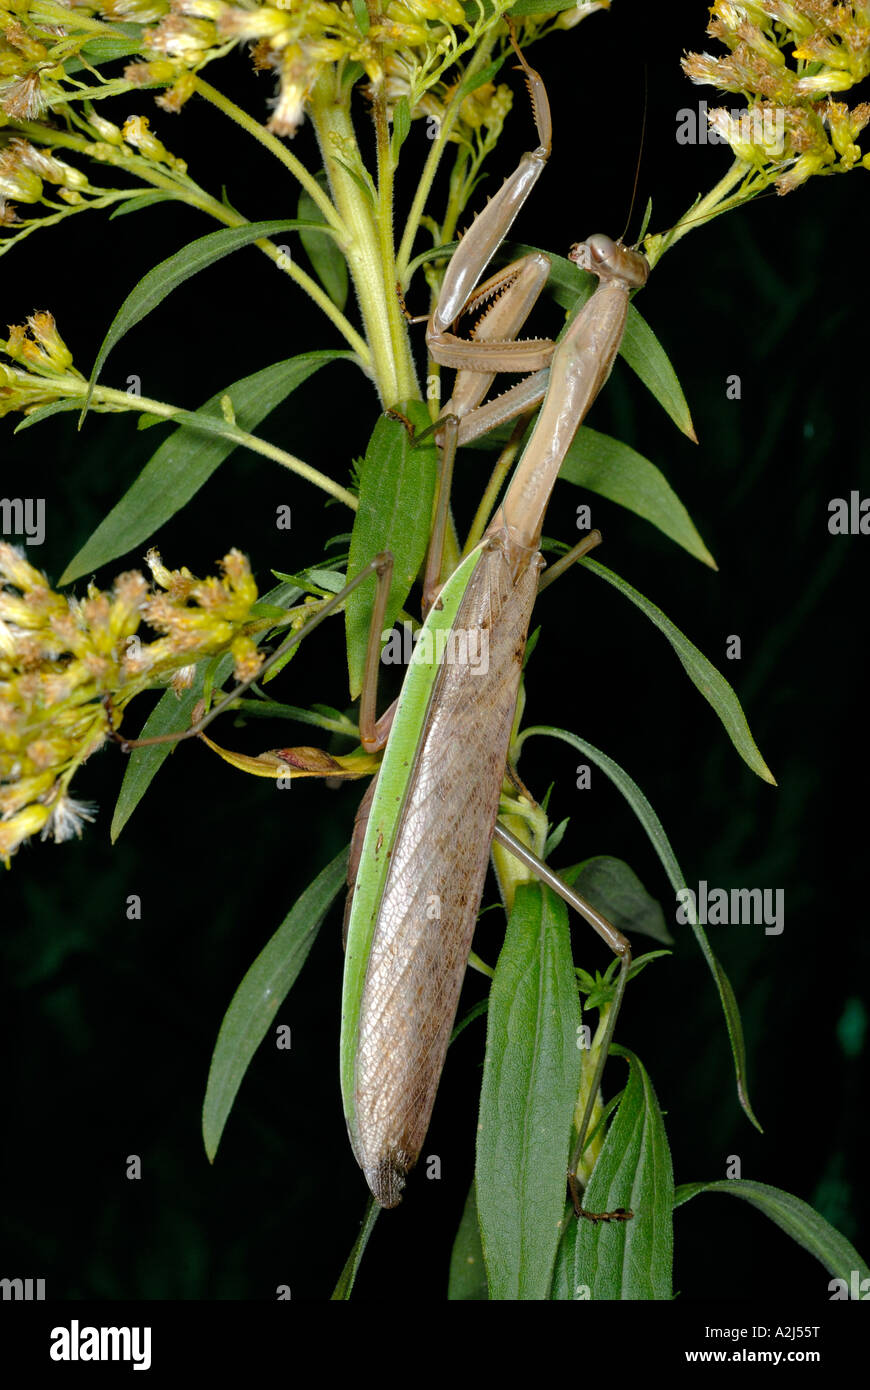 Cinese Tenodera mantid aridifolia mimetizzata su oro Foto Stock